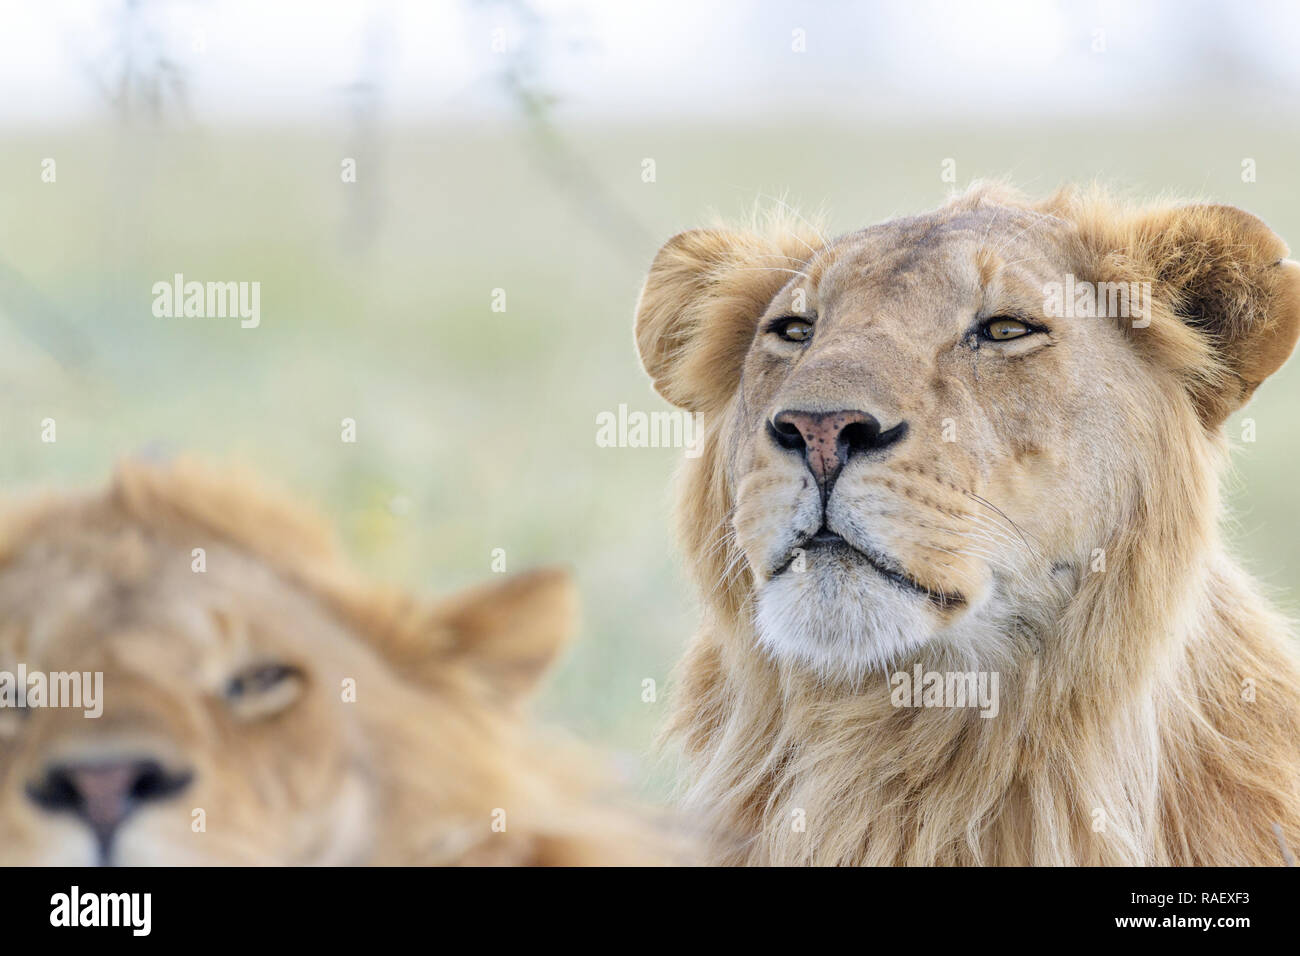 Male lion (Panthera leo) portrait, derrière le frère, l'aire de conservation de Ngorongoro, en Tanzanie. Banque D'Images